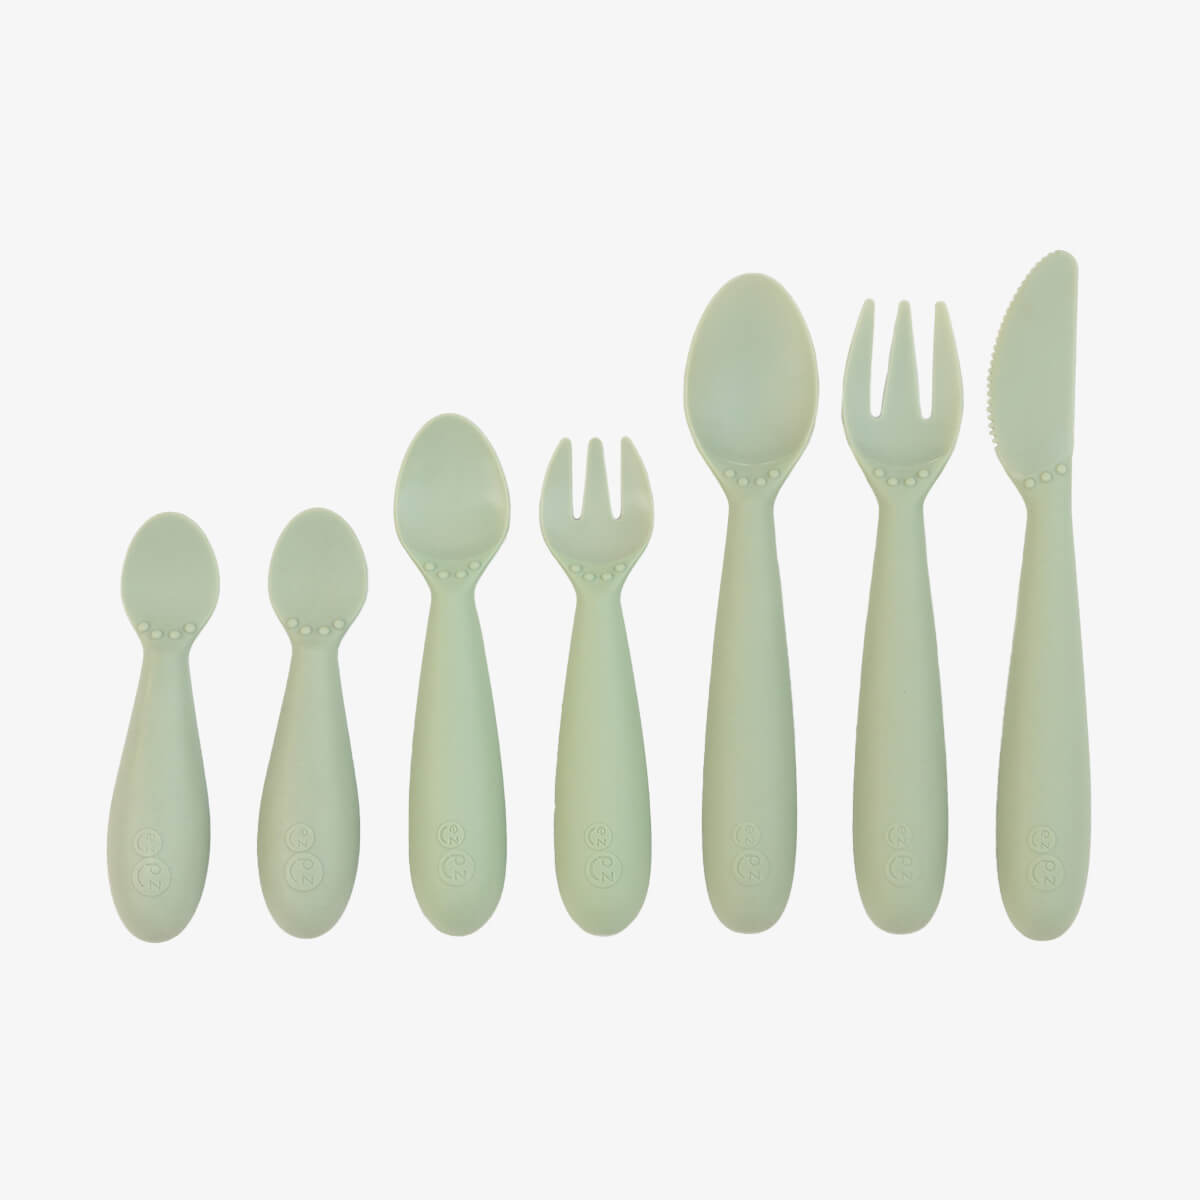 Vintage Tupperware Measuring Spoons Set of 7 Spoons Plus a 